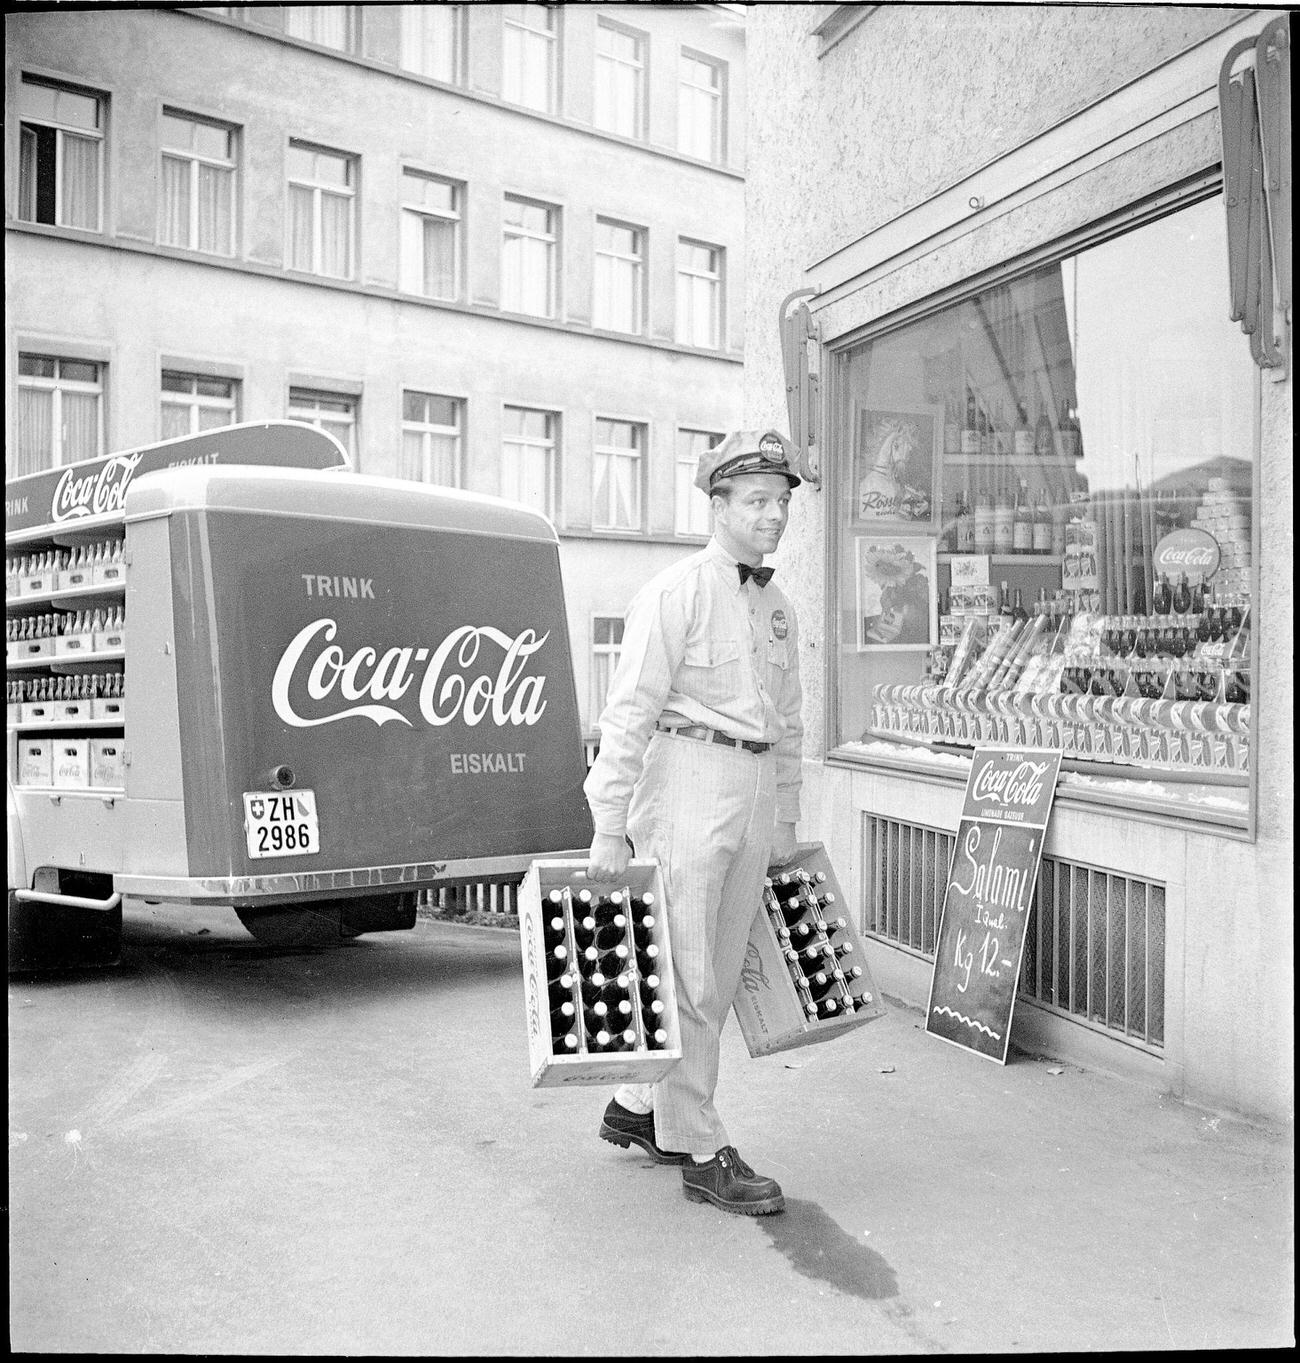 Coca-Cola delivery van making deliveries, 1950.